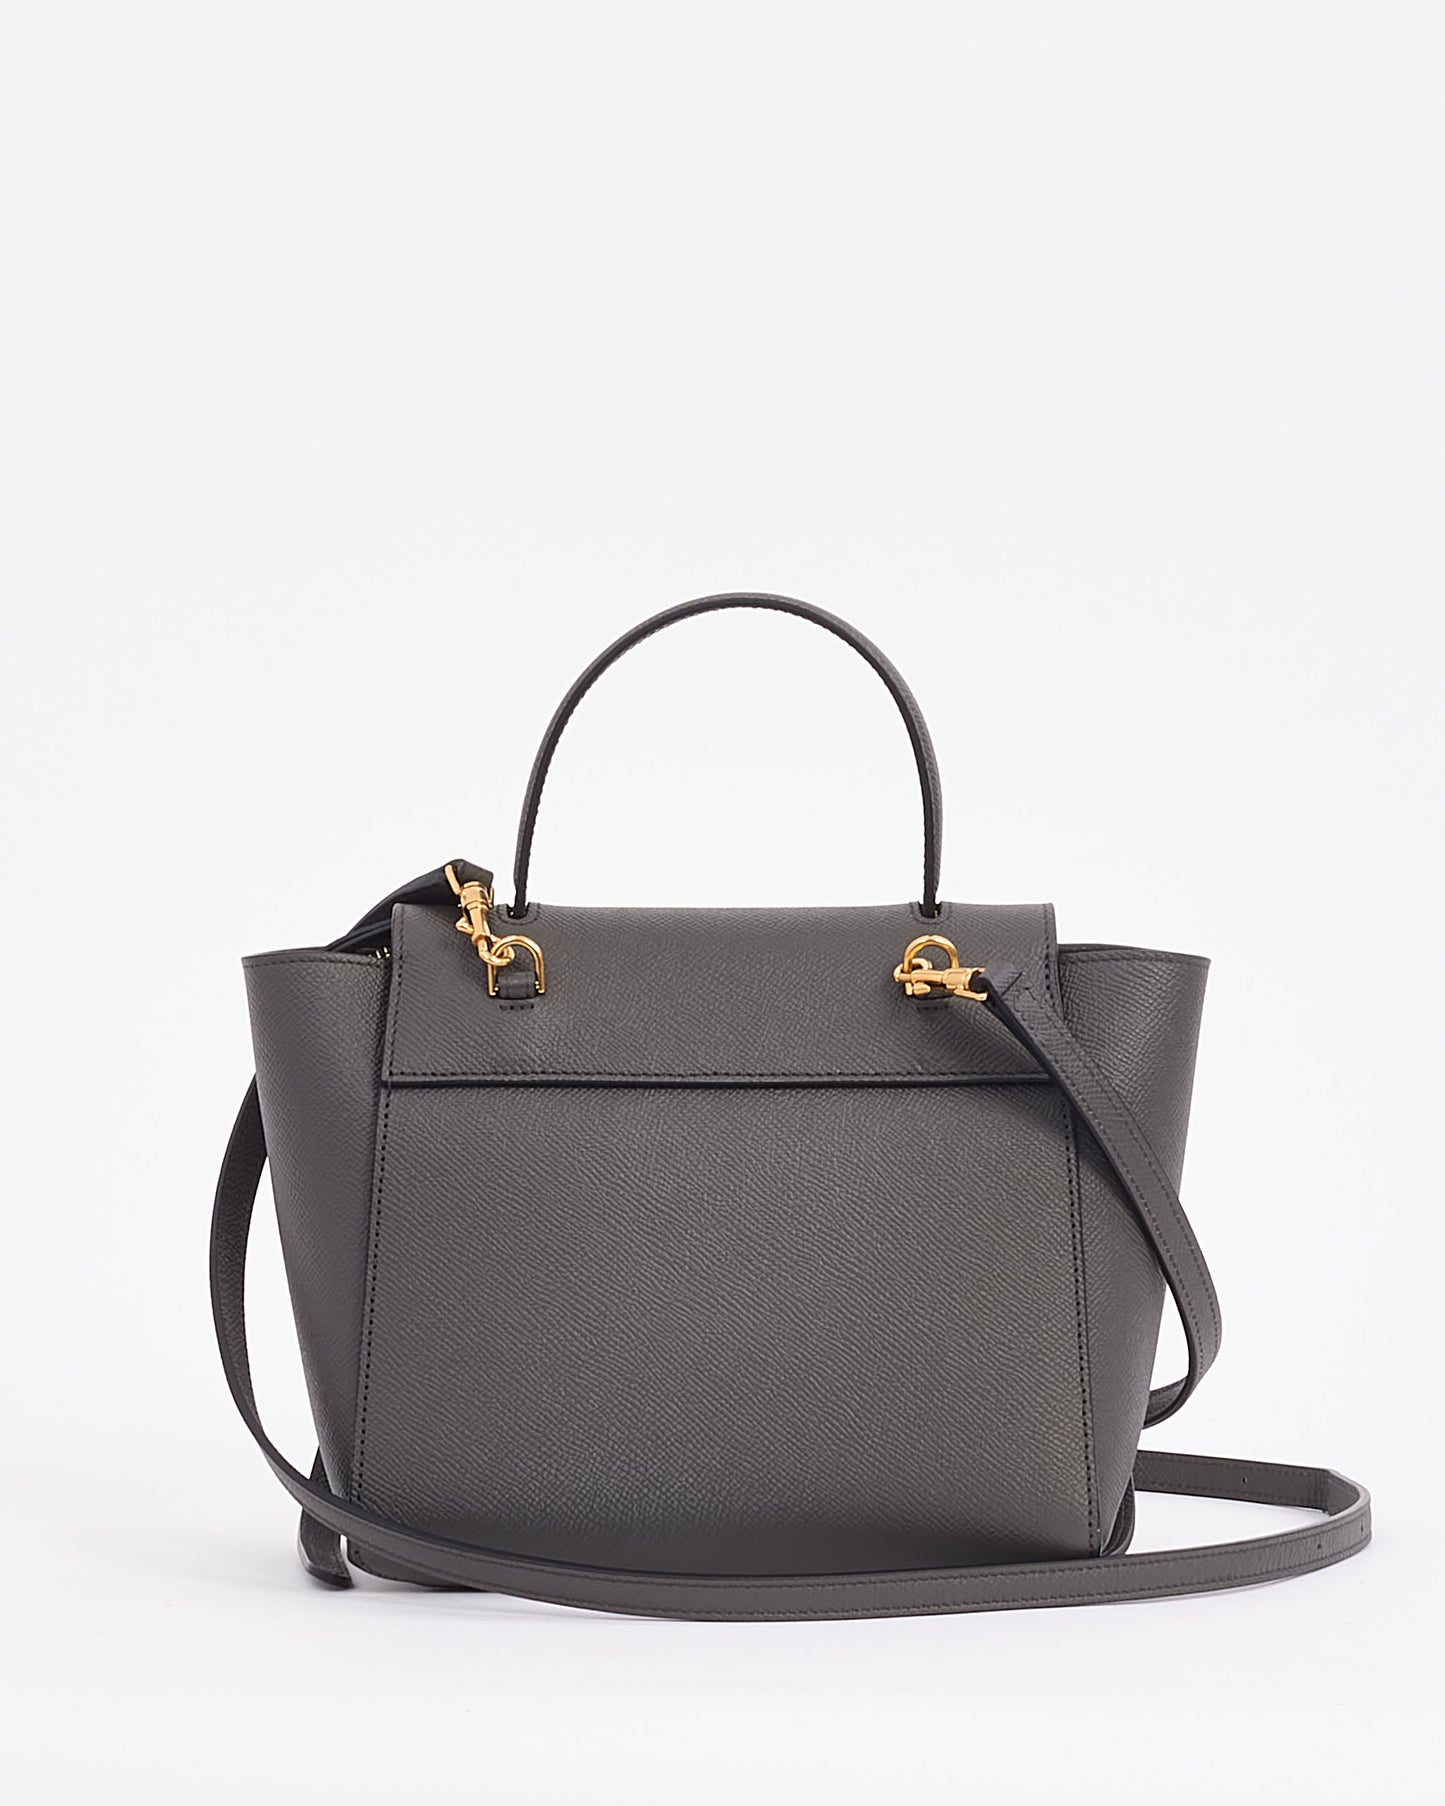 Celine Grey Grained Leather Nano Belt Bag